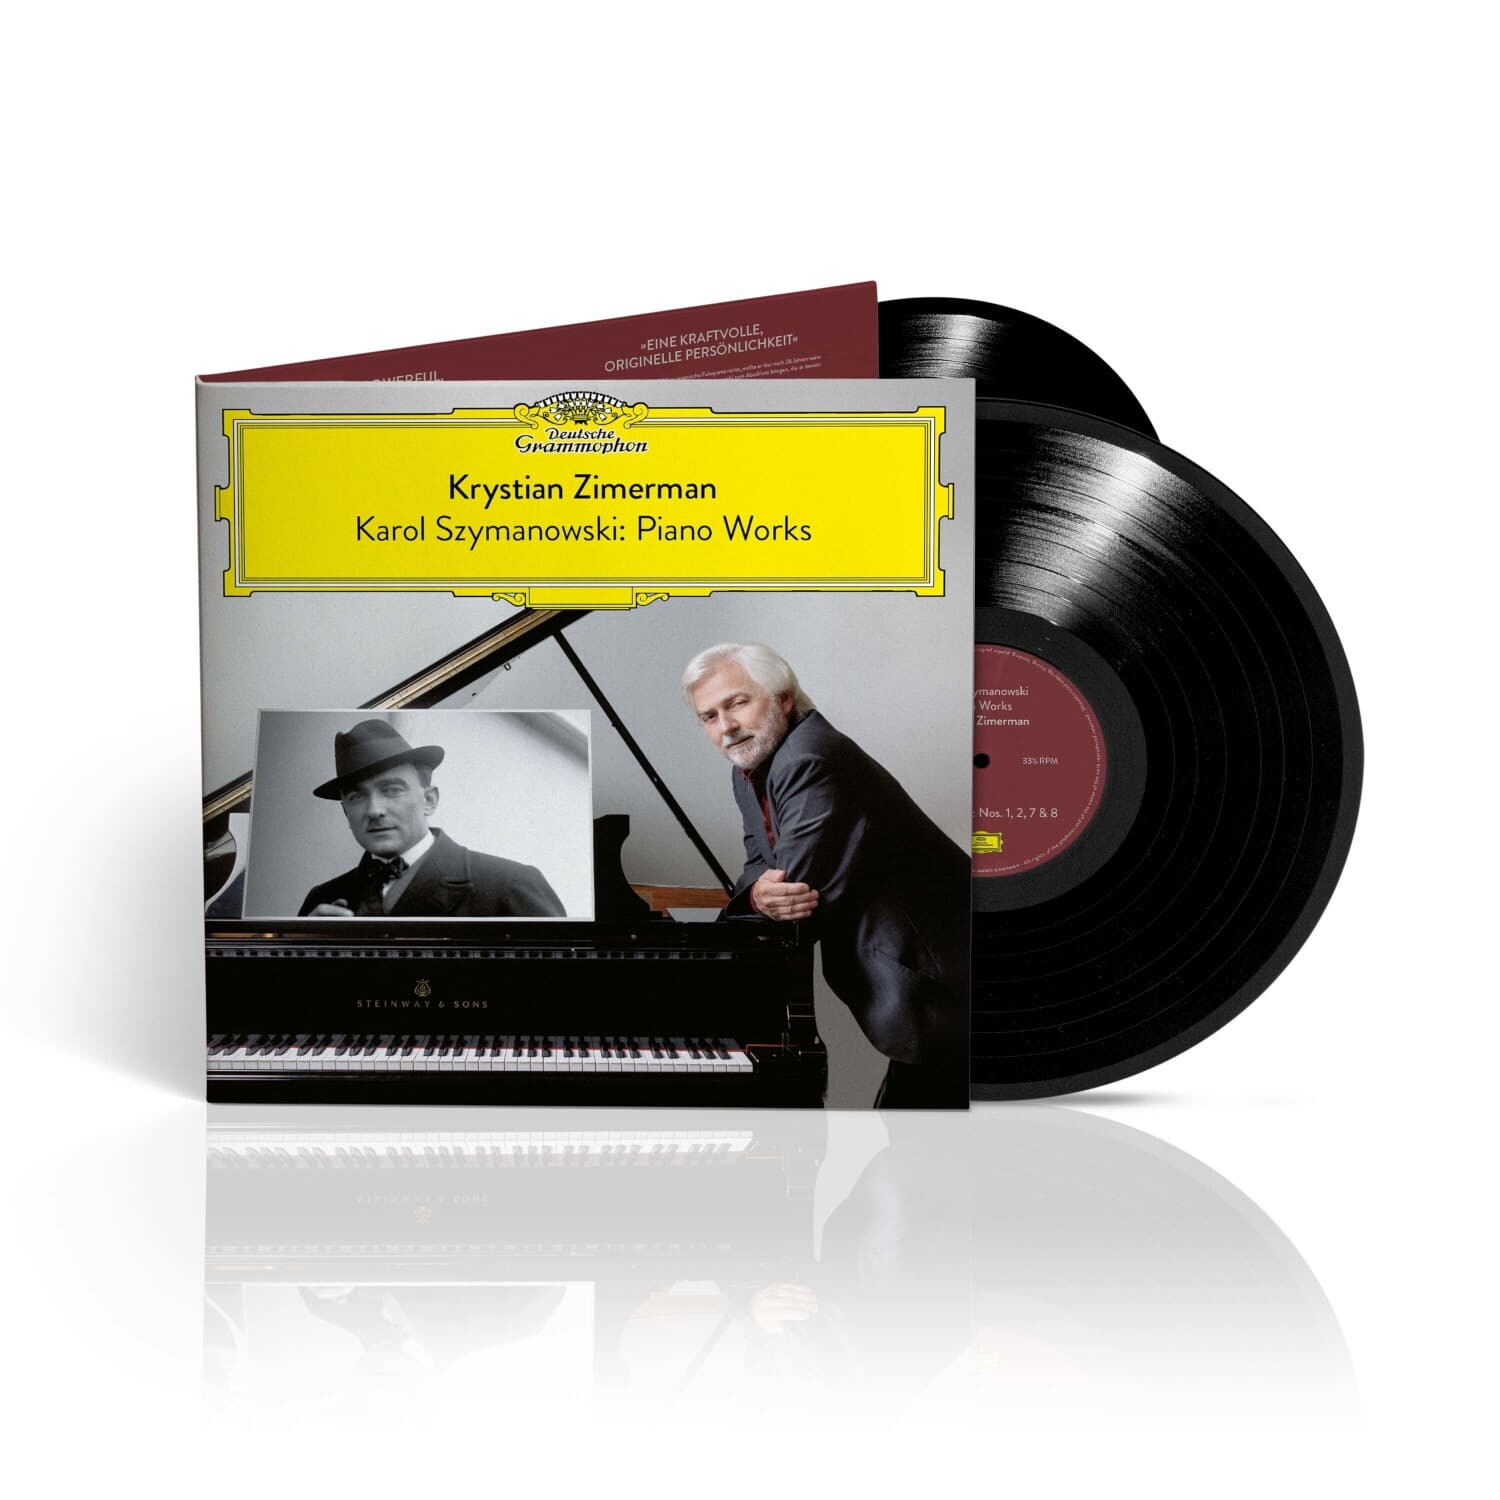 Deutsche　Grammophon　Shop　der　Works　Szymanowski:　offizielle　Krystian　Karol　Piano　Zimerman　Vinyl